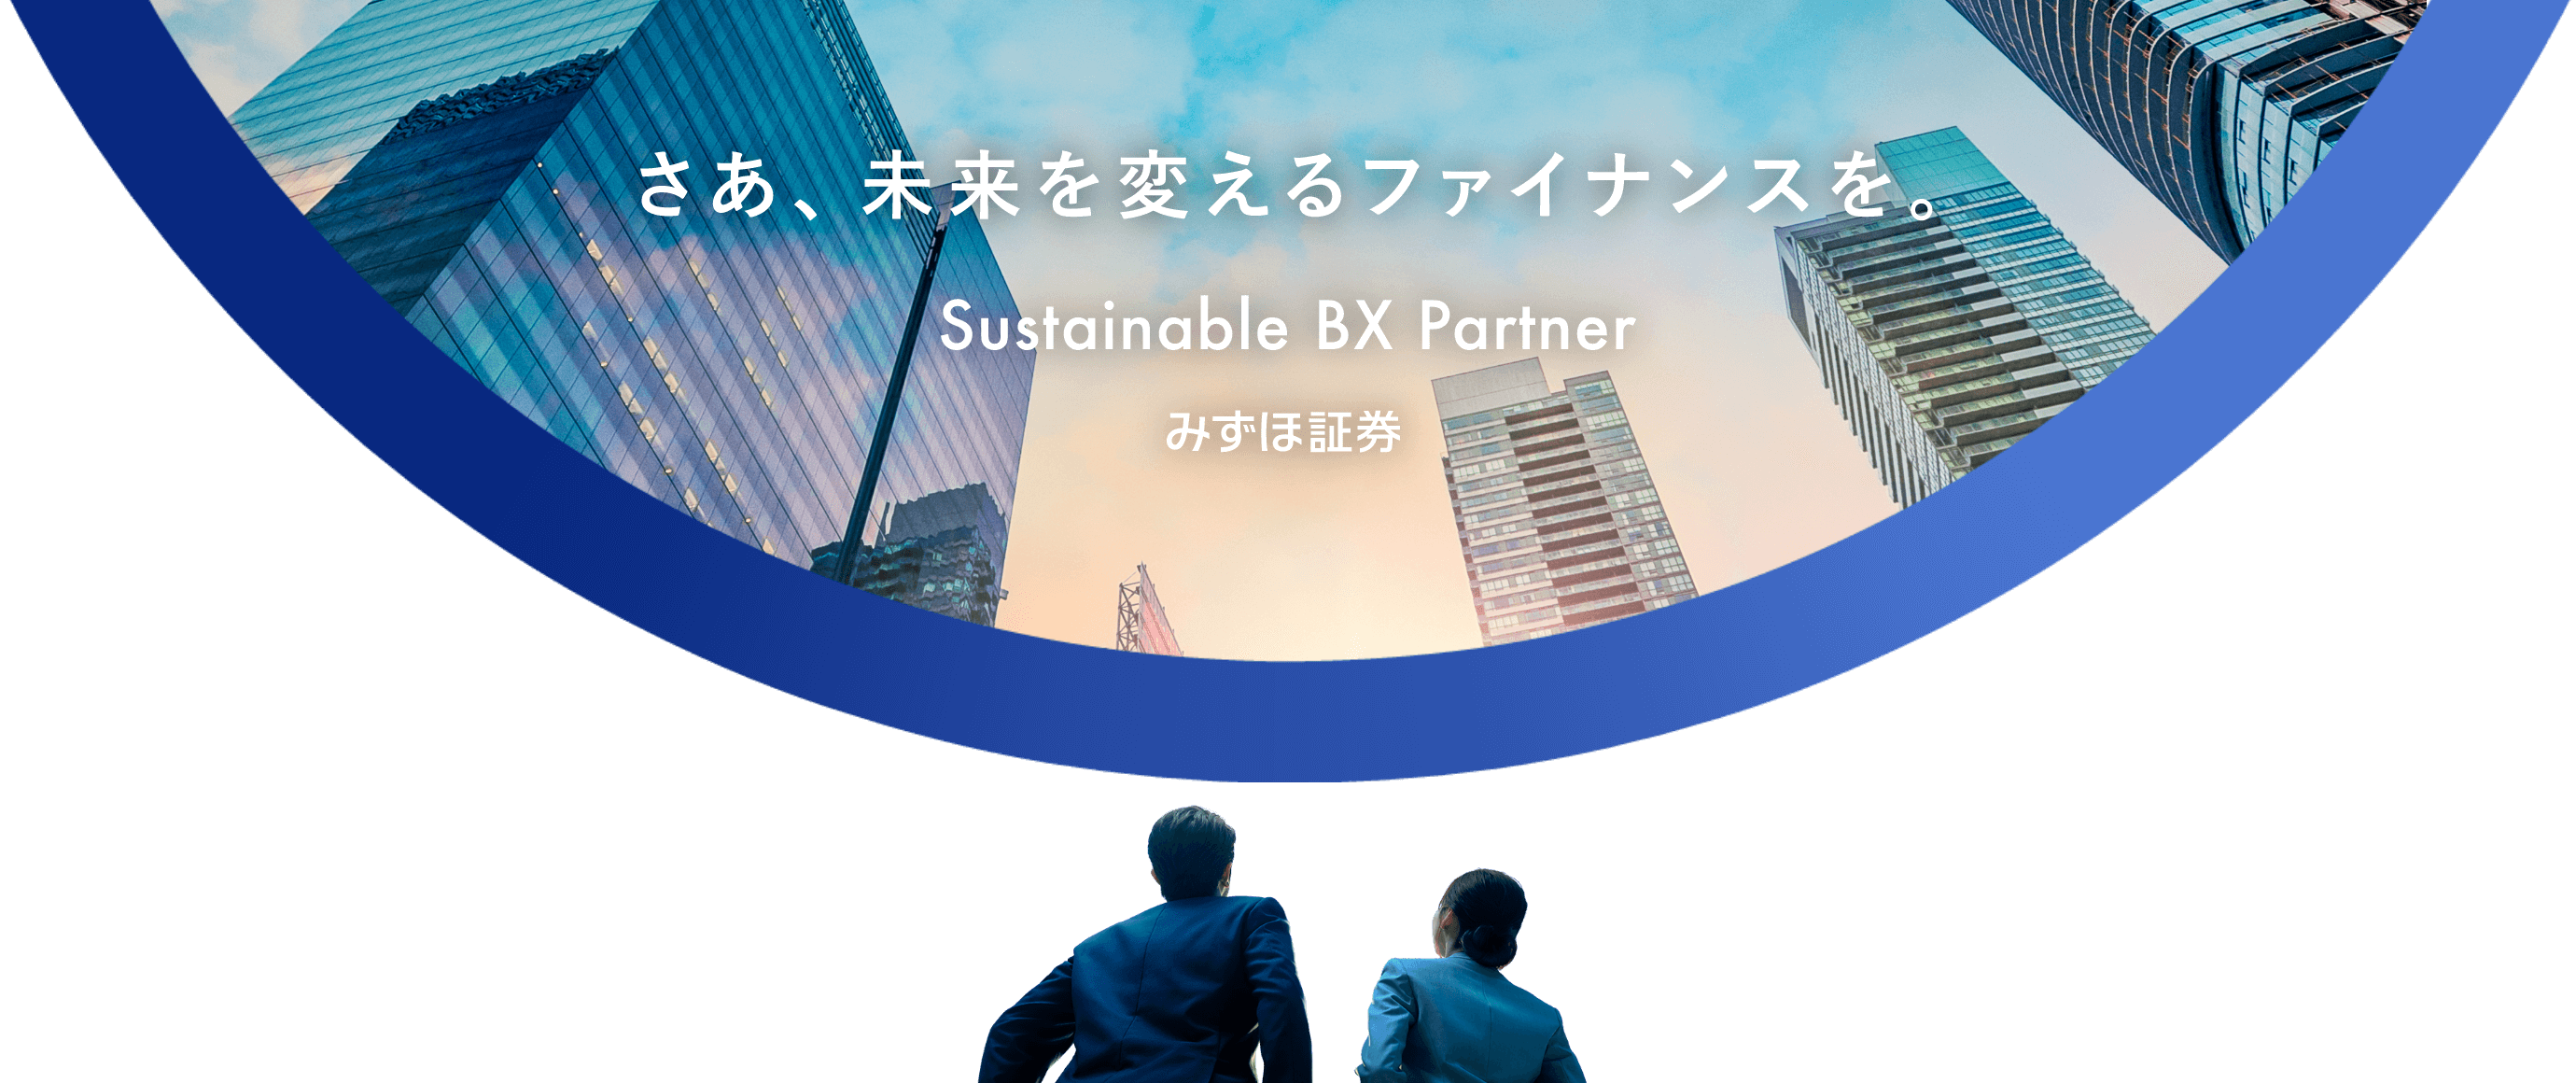 さあ、未来を変えるファイナンスを。Sustainable BX Partner みずほ証券